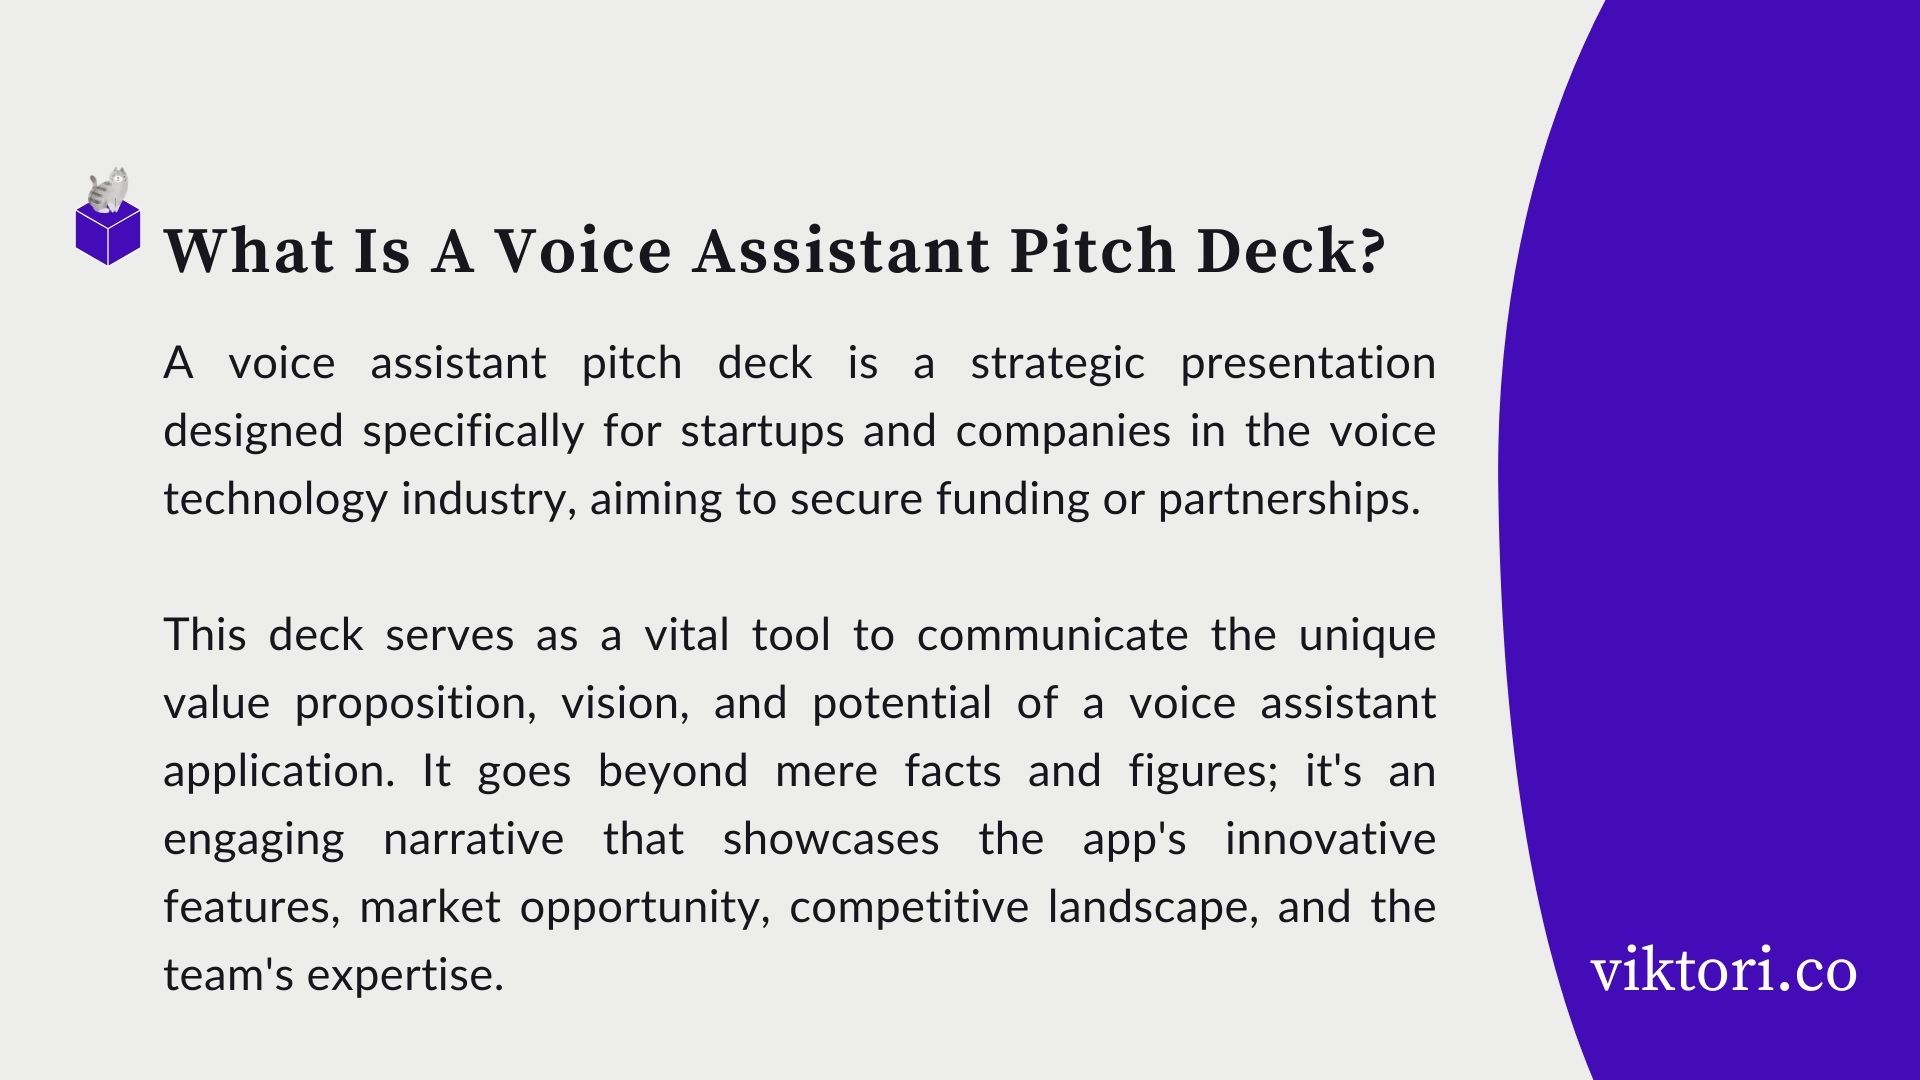 voice assistant pitch deck definition